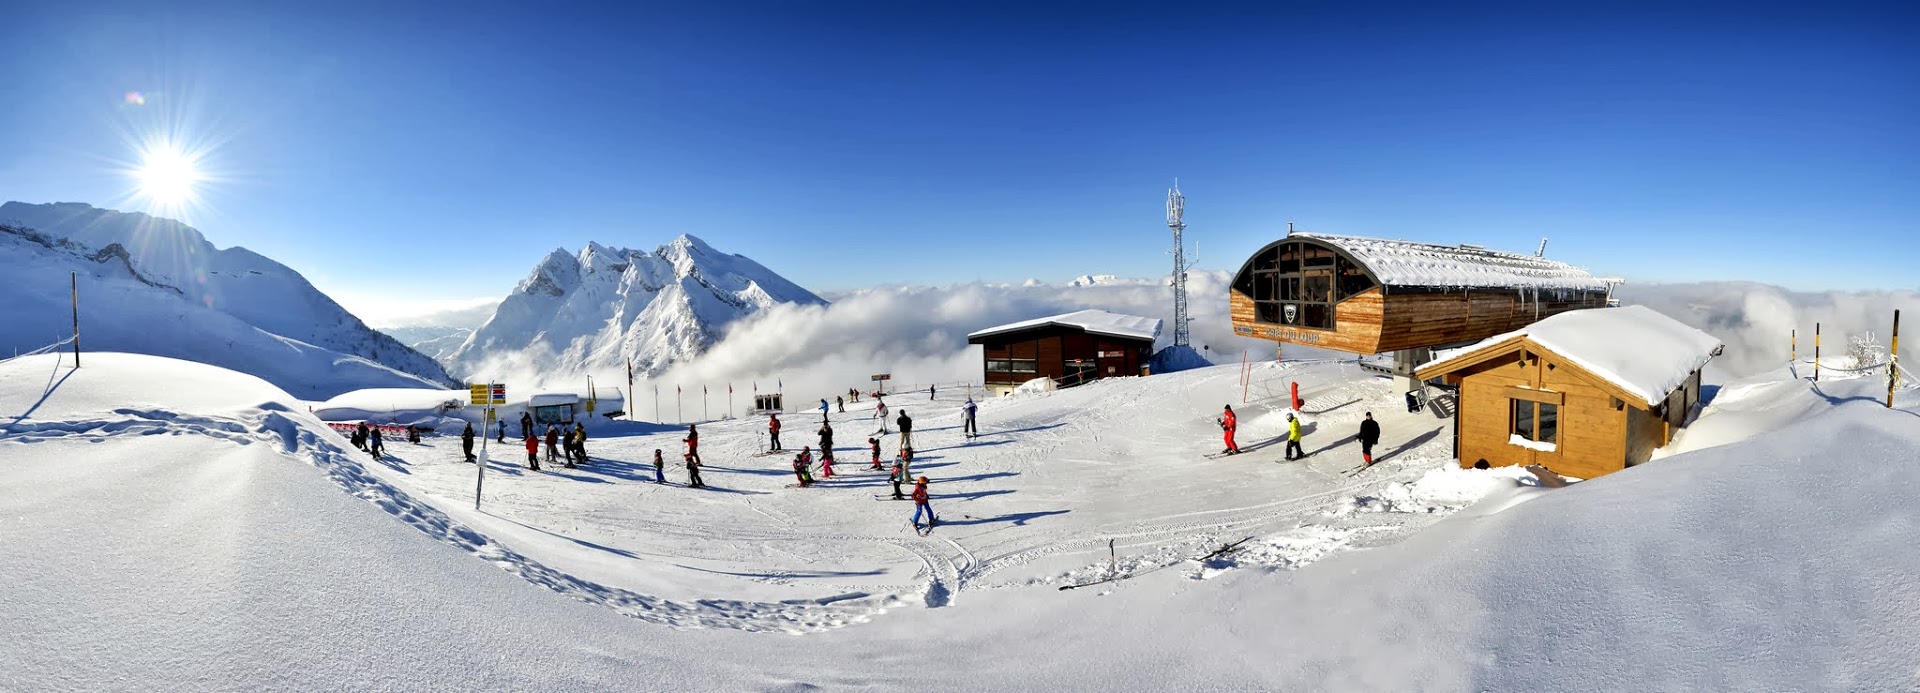 La Clusaz : La station de ski Française aux traditions Haut Savoyarde